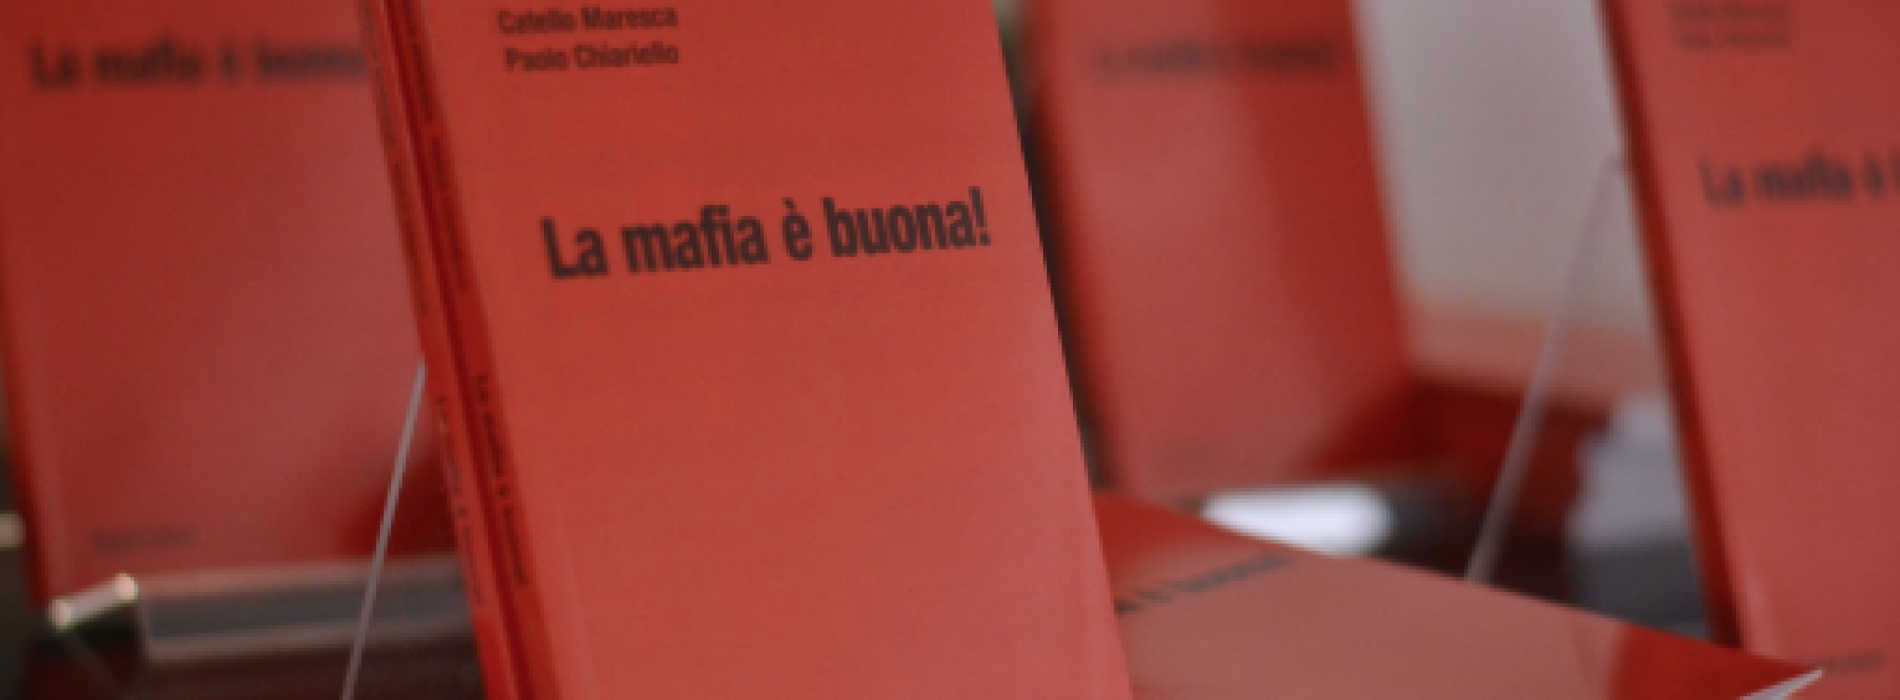 La mafia è buona! Il libro di Catello Maresca e Paolo Chiariello